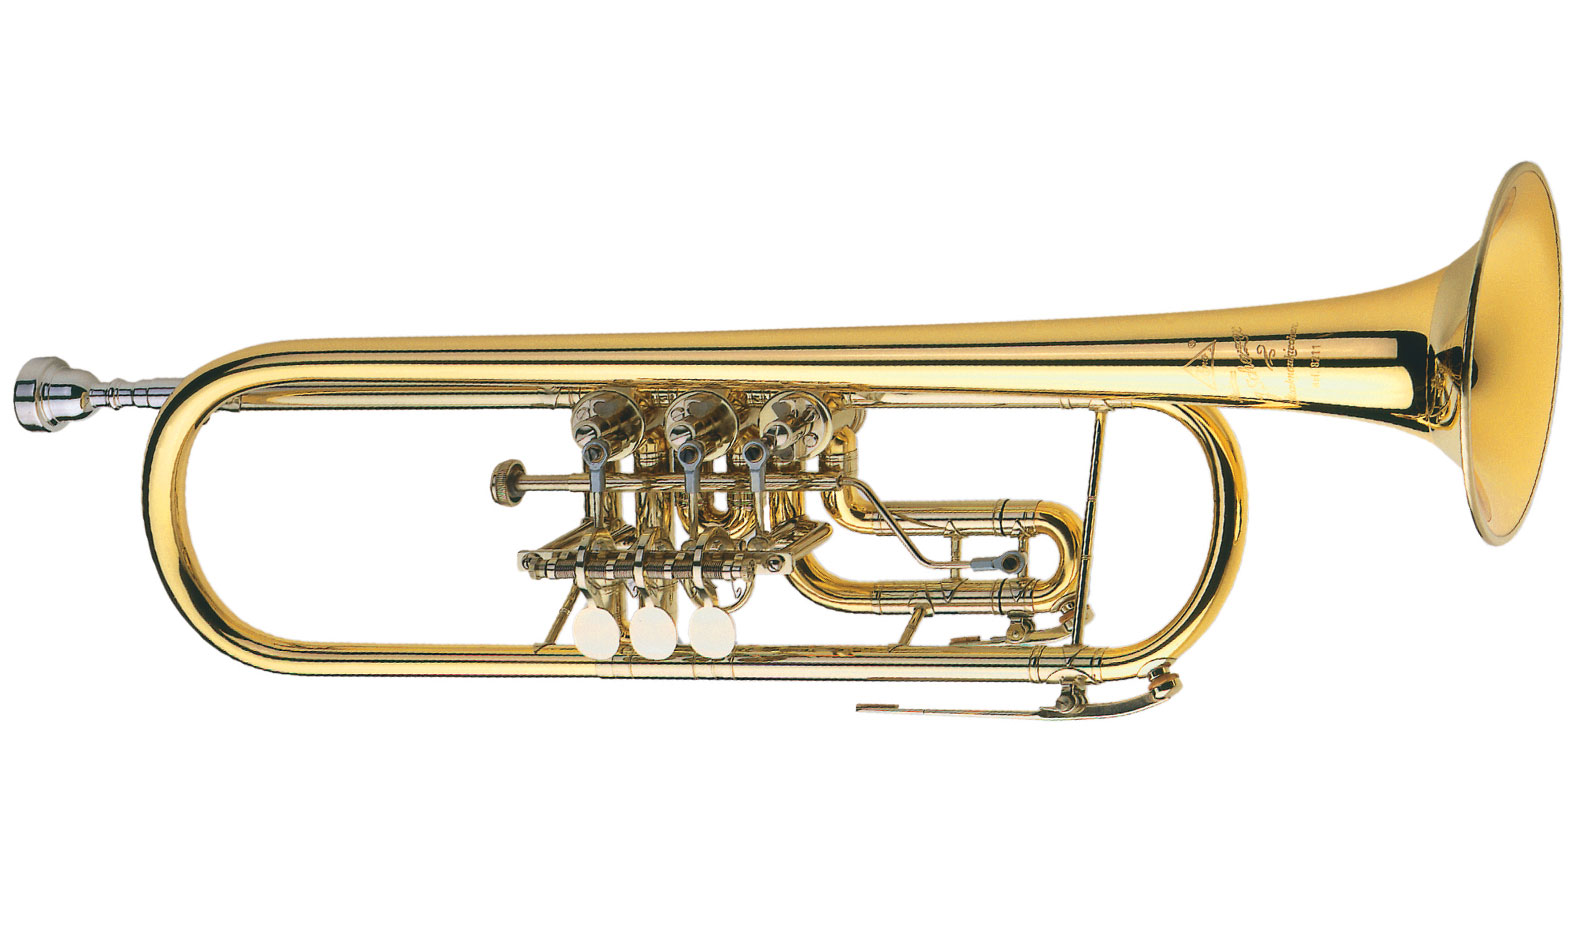 B Trumpets Instrument Types J Scherzer